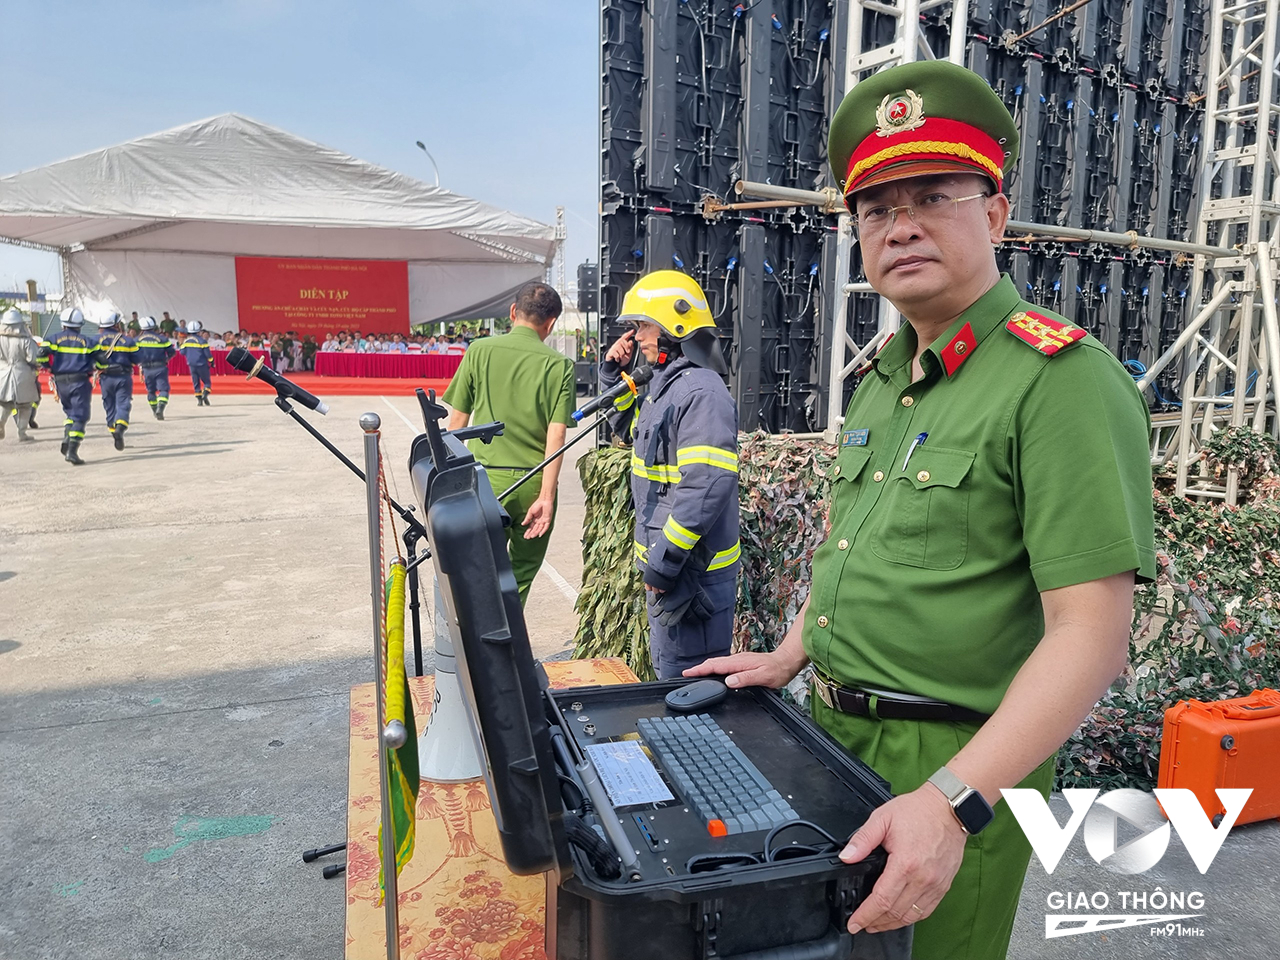 Đại tá Phạm Trung Hiếu, Trưởng Phòng Cảnh sát PCCC&CNCH, Công an TP. Hà Nội trực tiếp kiểm tra trạm điều khiển của flycam